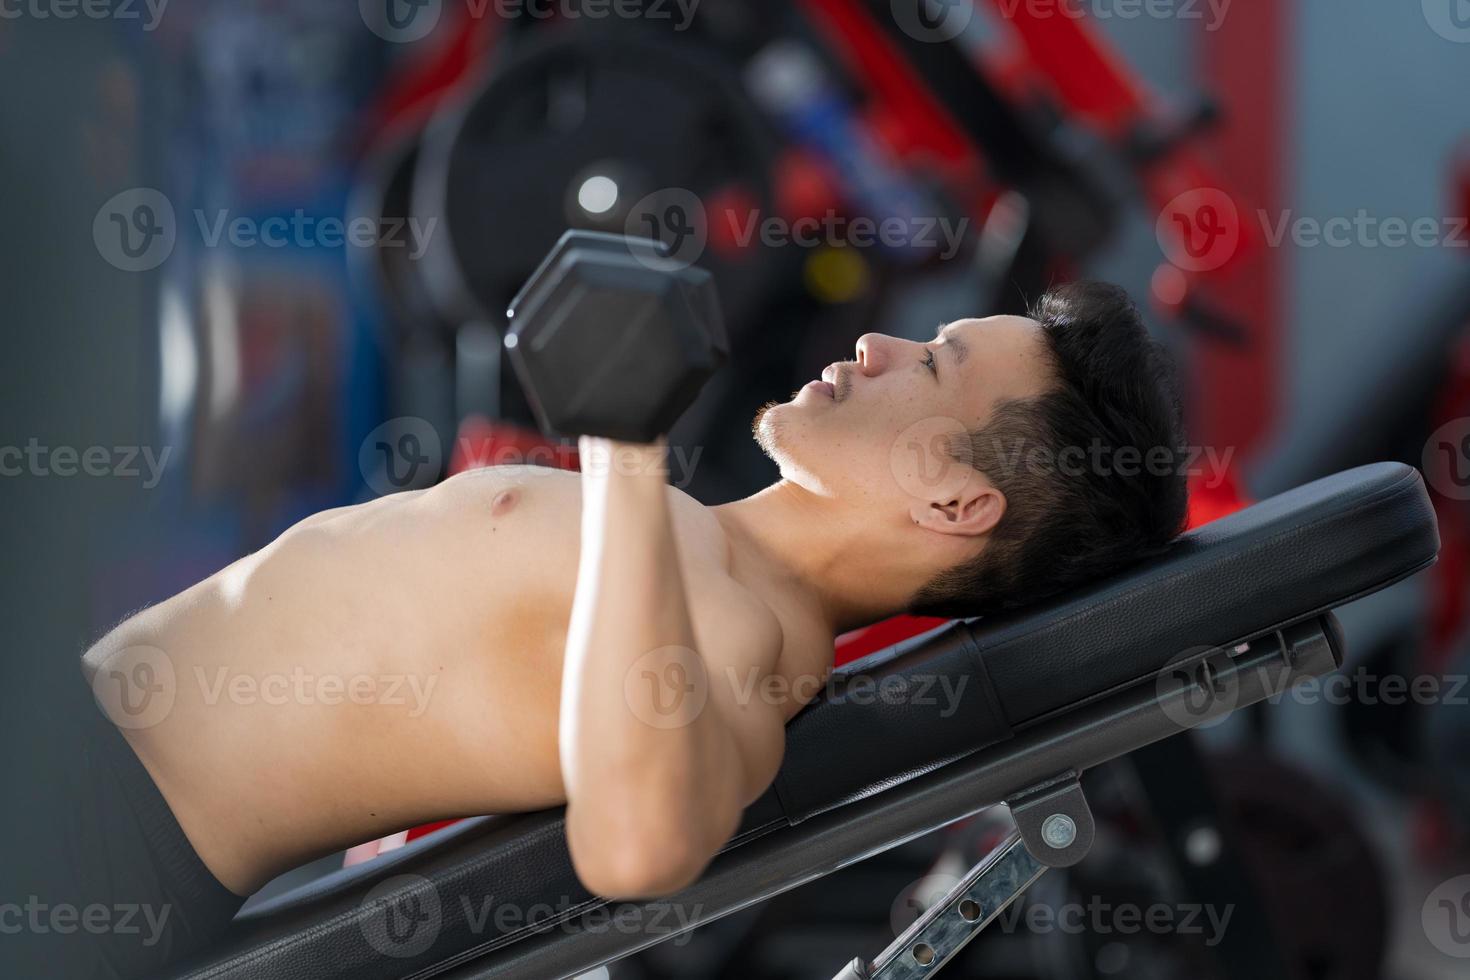 sportieve man training met halter in de sportschool foto